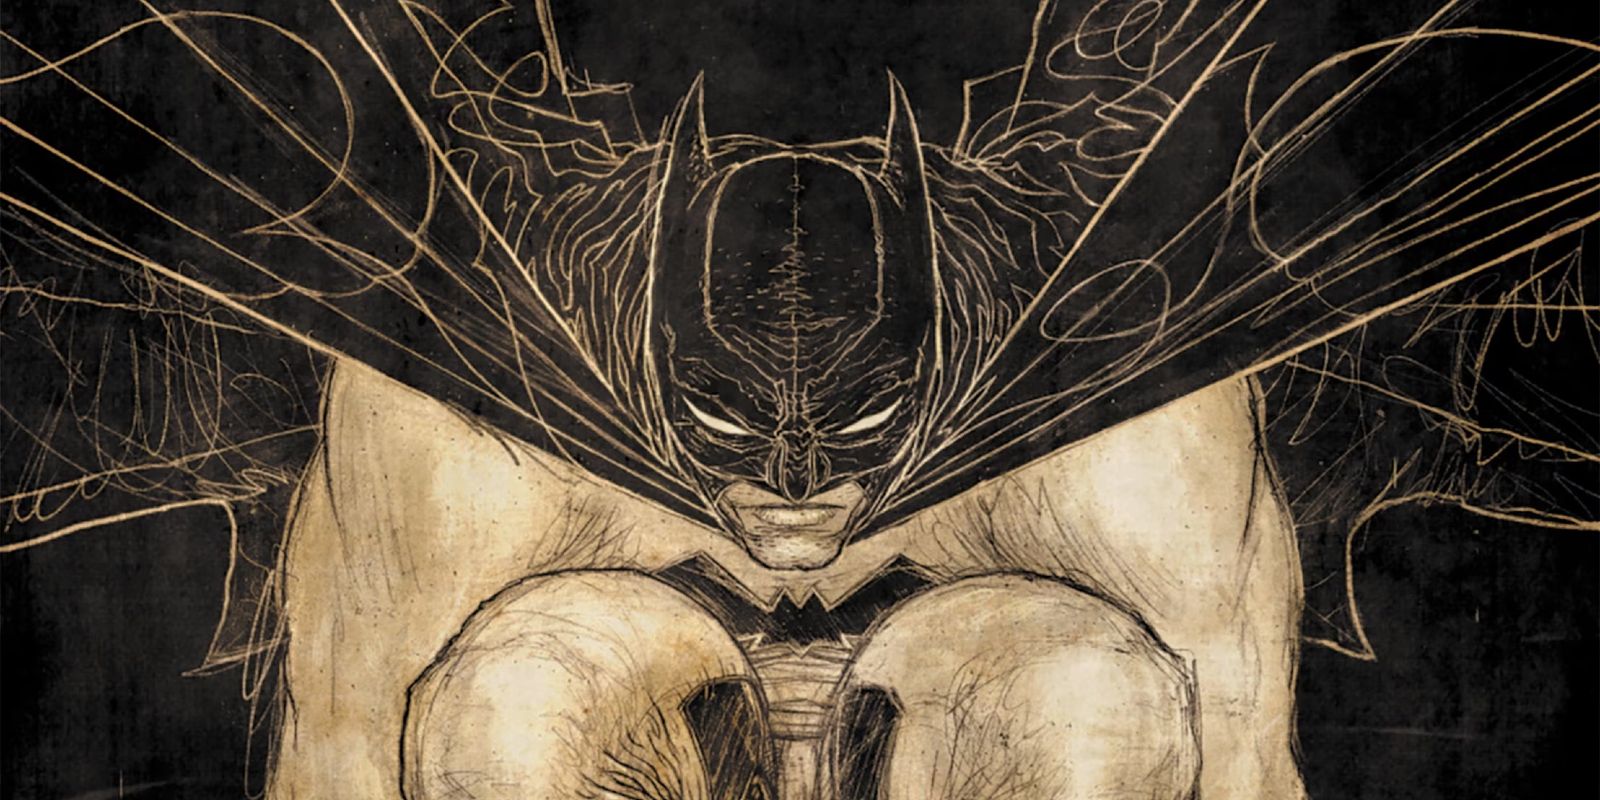 Batman in Batman: Gargoyle of Gotham sketched by artist Rafael Grampa.